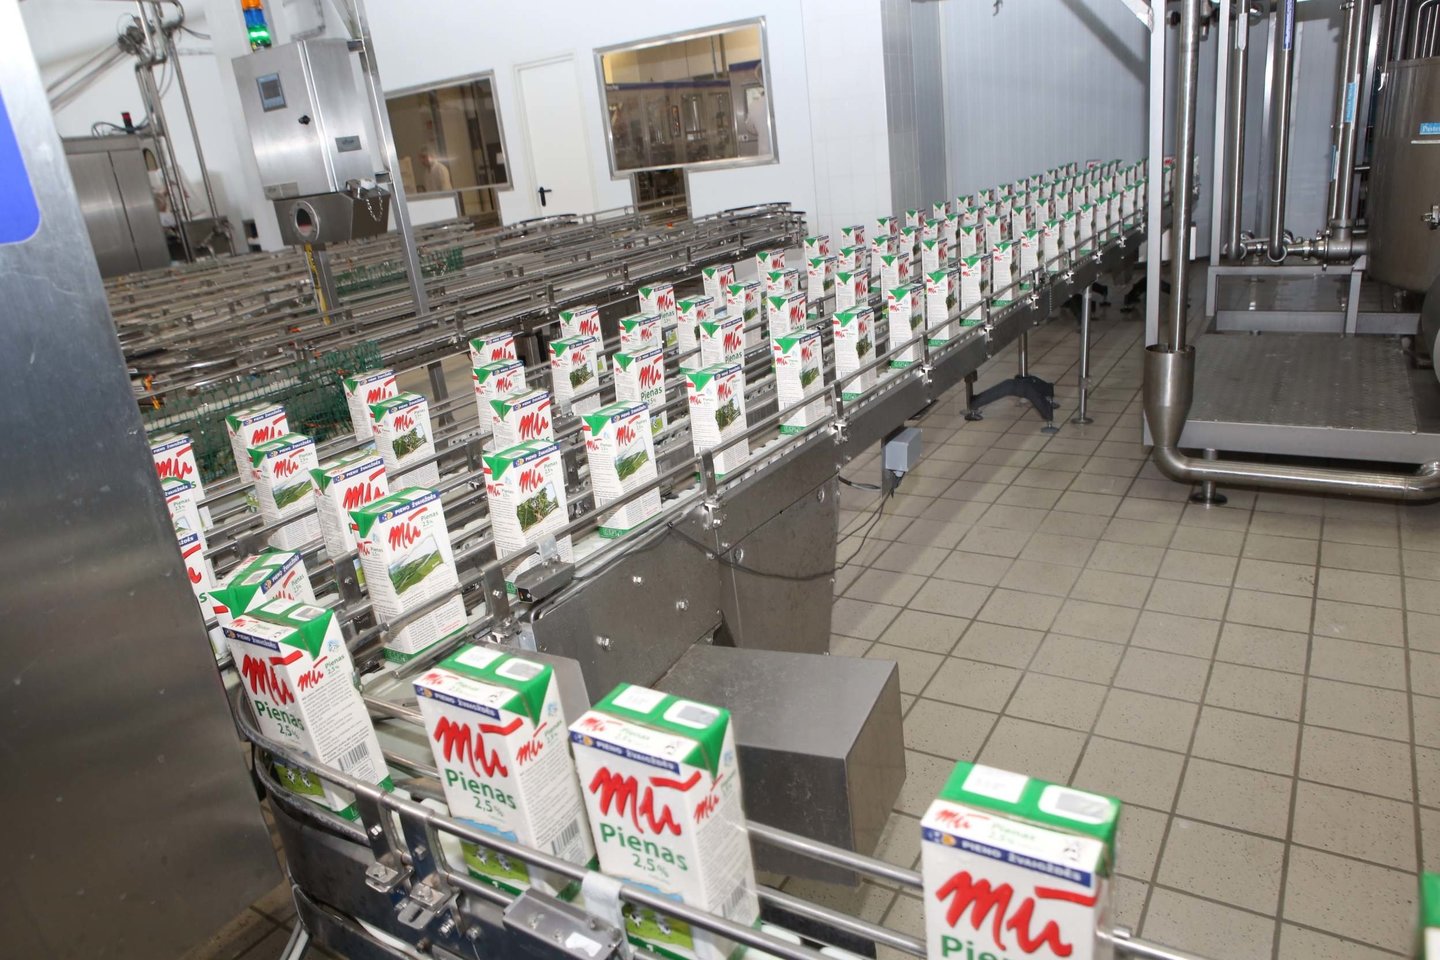 Lietuvos pieno perdirbėjai teigia jau spėję pajusti nuo penktadienio didėjančių  muitų produktams, eksportuojamiems iš Europos Sąjungos (ES) į Jungtines valstijas (JAV), poveikį, rašo portalas lrt.lt.<br>M.Patašiaus nuotr.